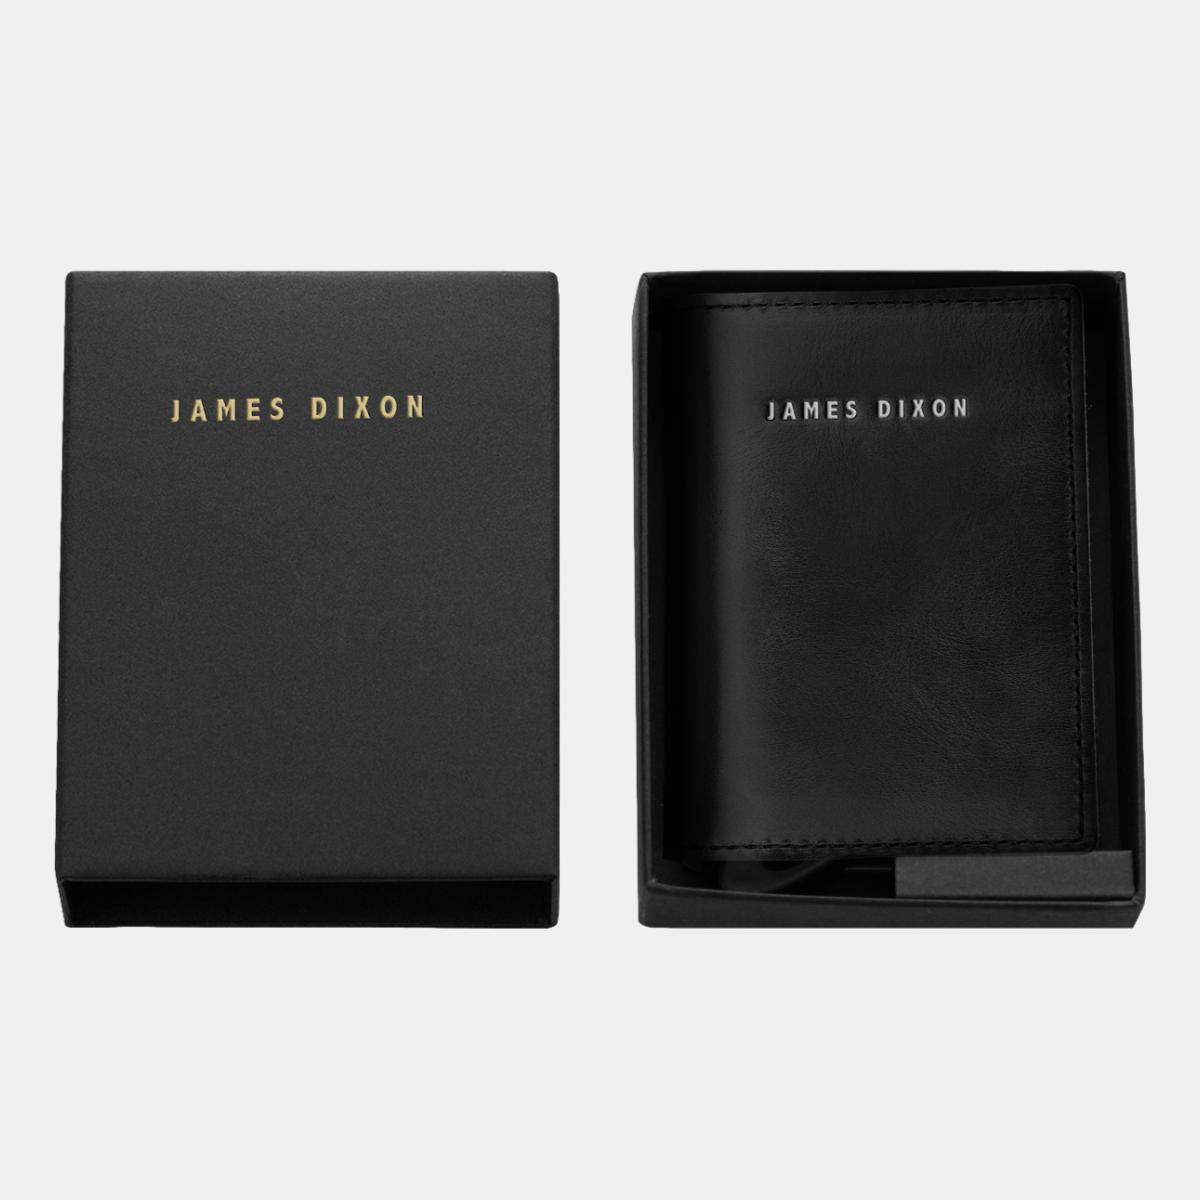 jd0003 james dixon puro classic black silver wallet box